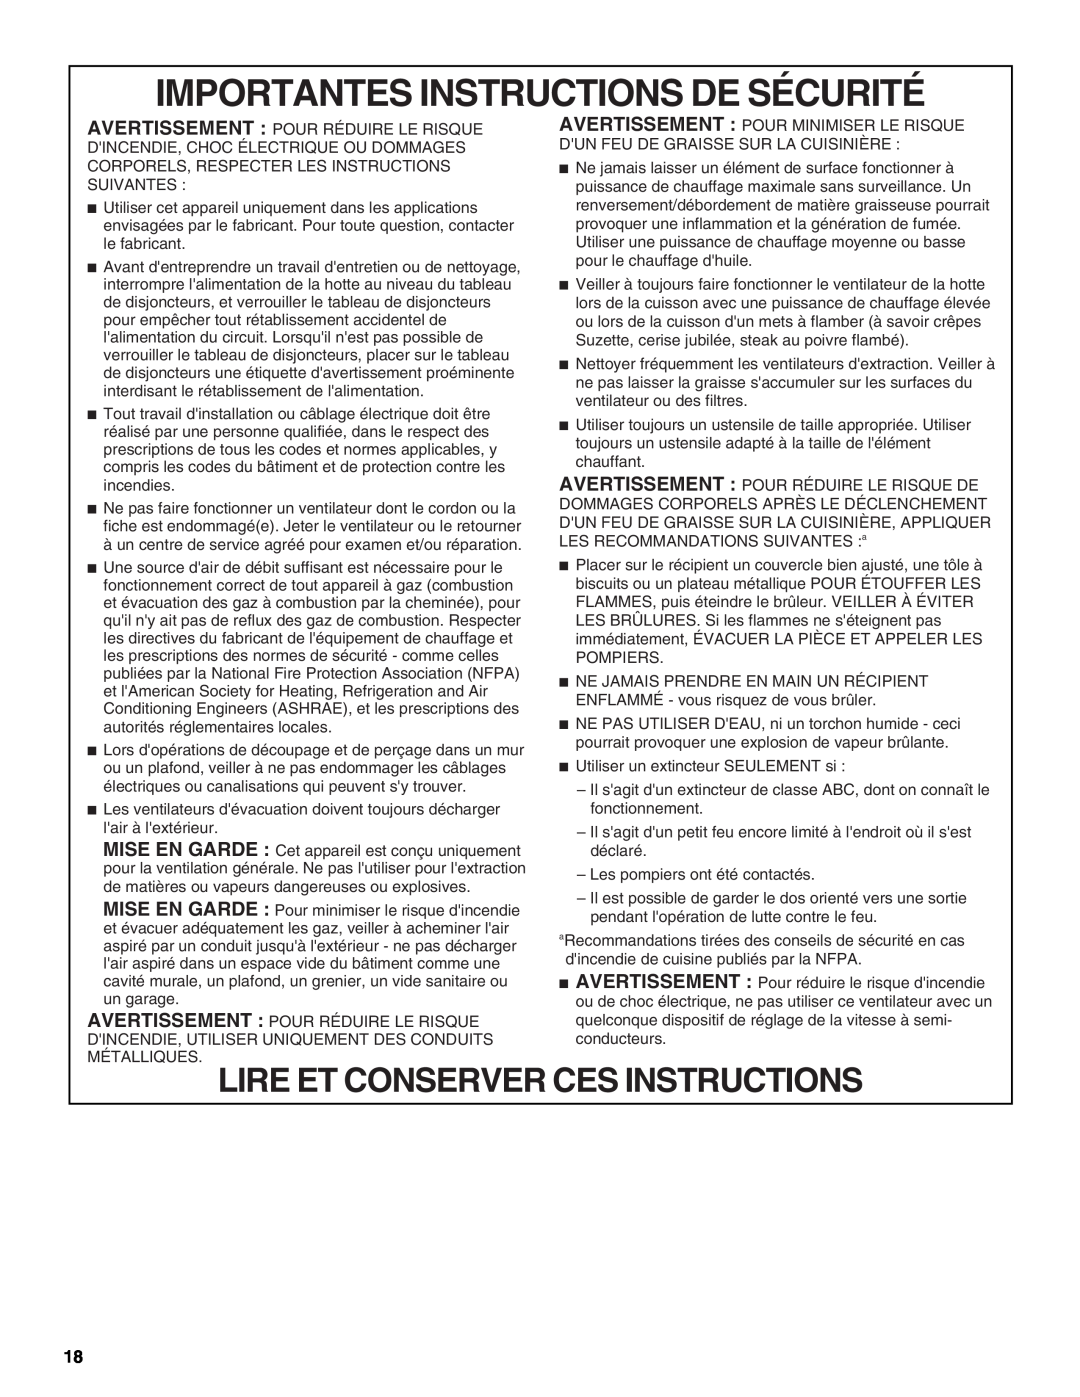 Jenn-Air LI3URB/W10274314C Importantes Instructions De Sécurité, Lire Et Conserver Ces Instructions 